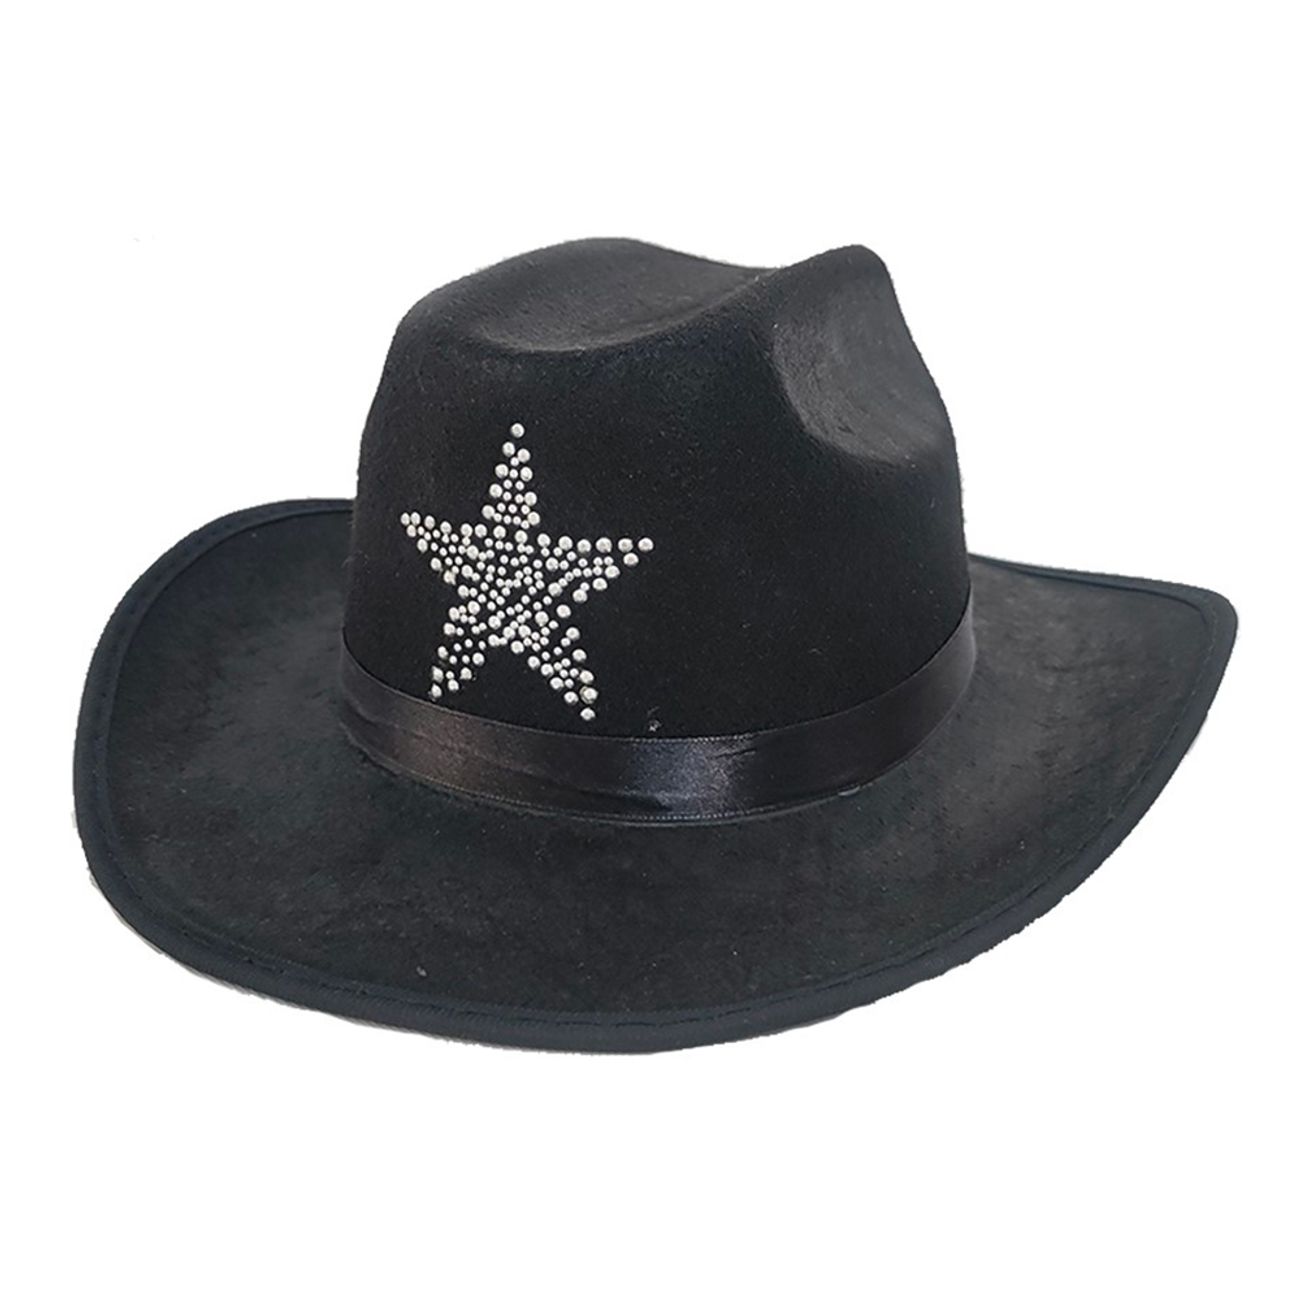 svart-cowboyhatt-med-sheriffstjarna-88979-1